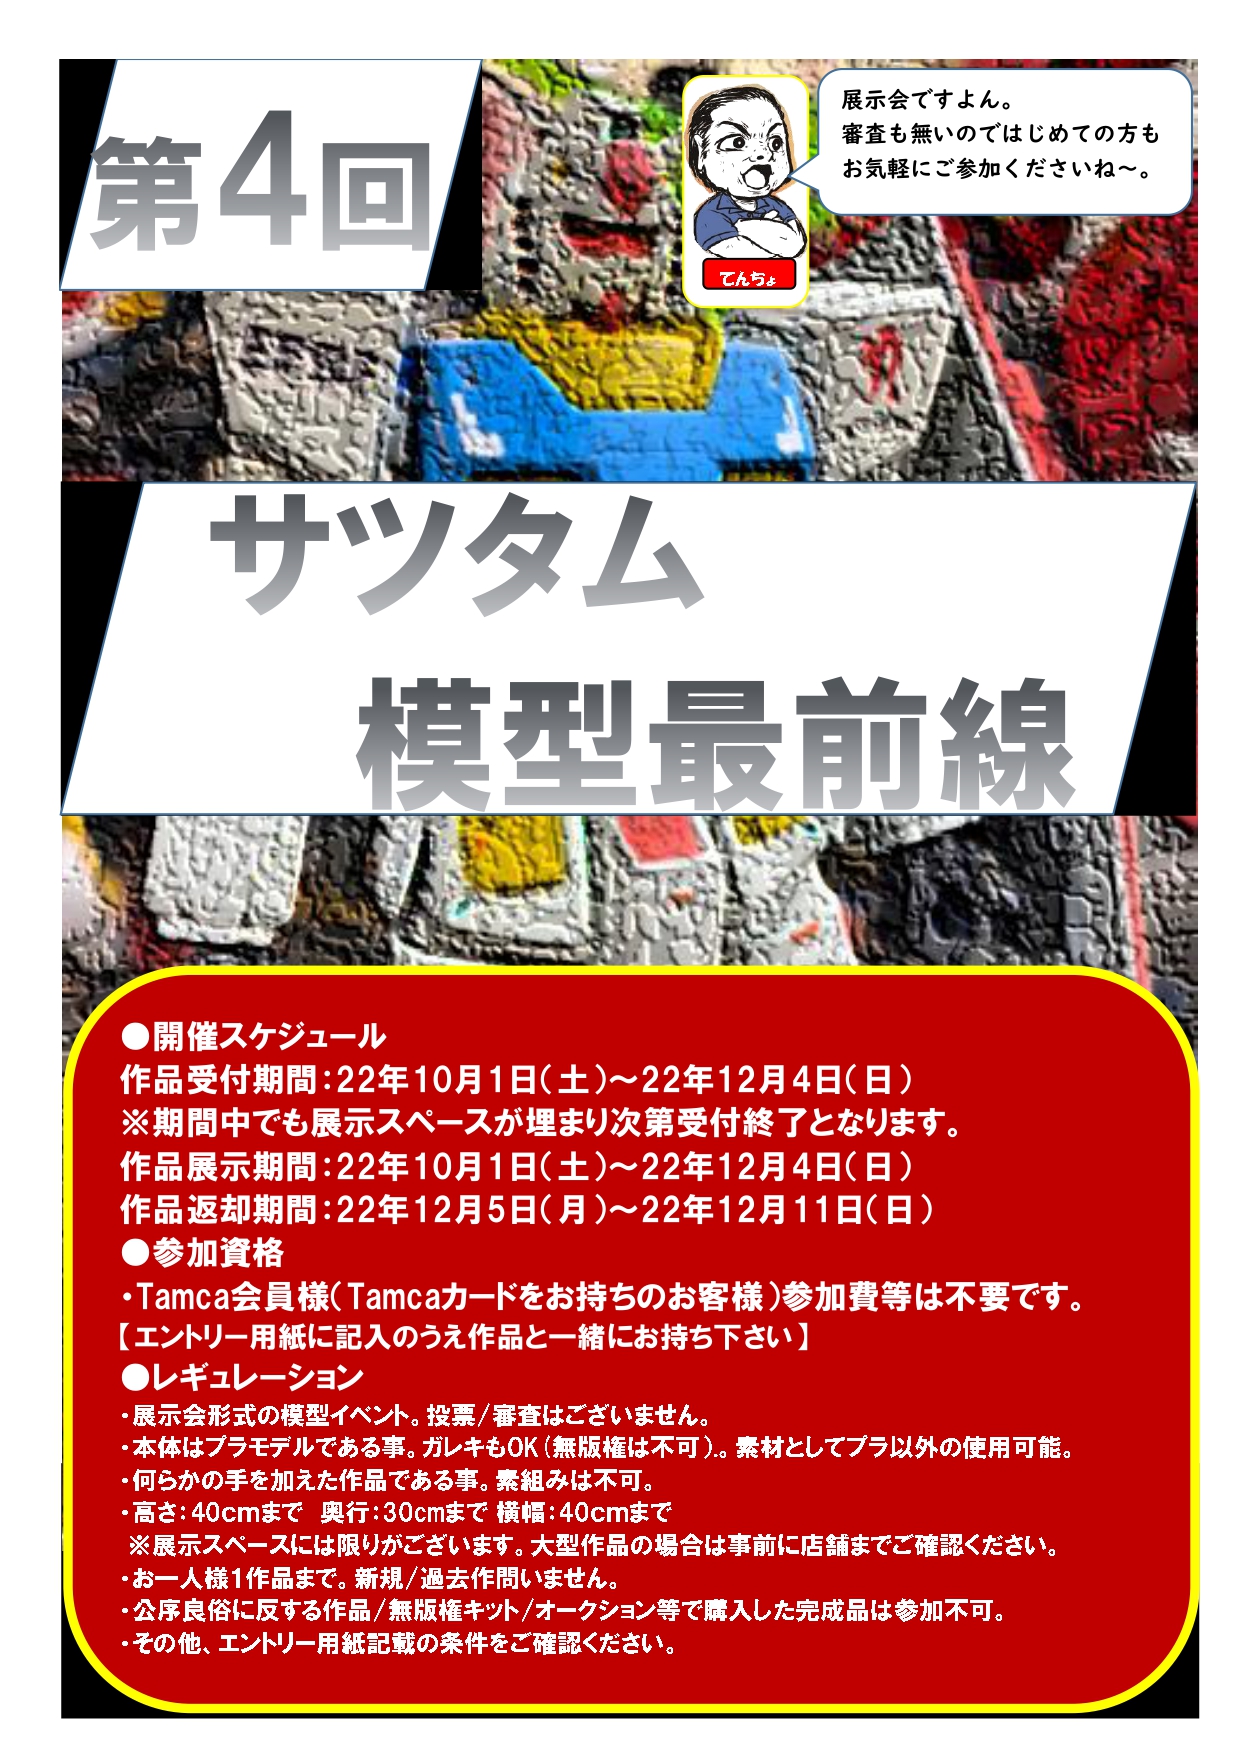 タムタム札幌店プラモデル展示会 「第4回　サツタム模型最前線」